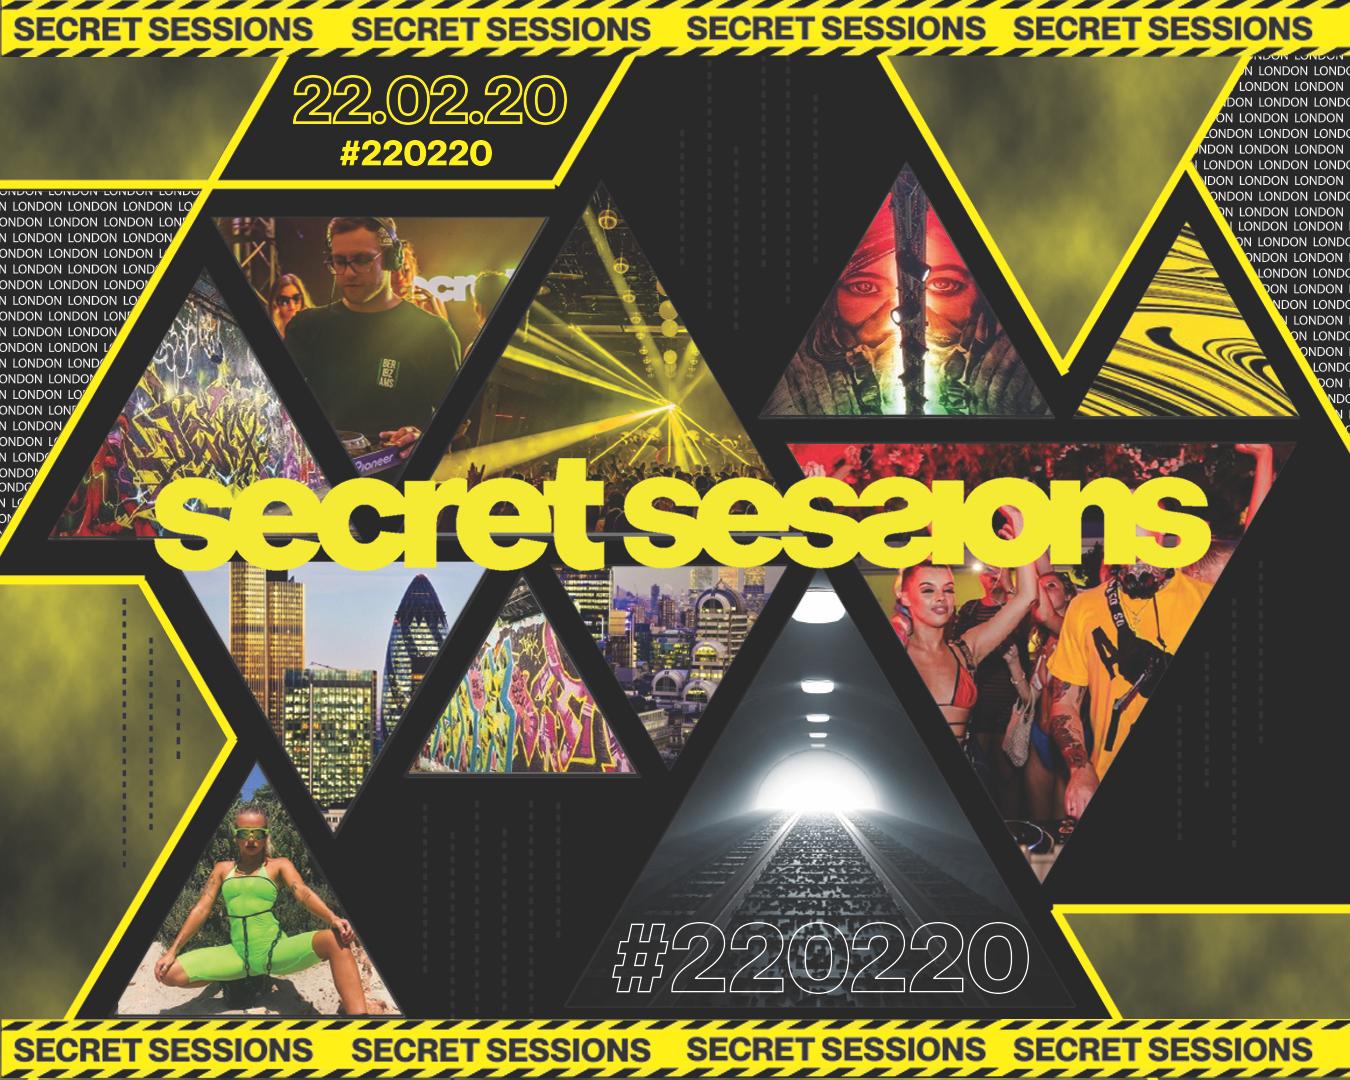 Secret Sessions Secret Sessions Maisie Vupto Vup Nita Starsessions